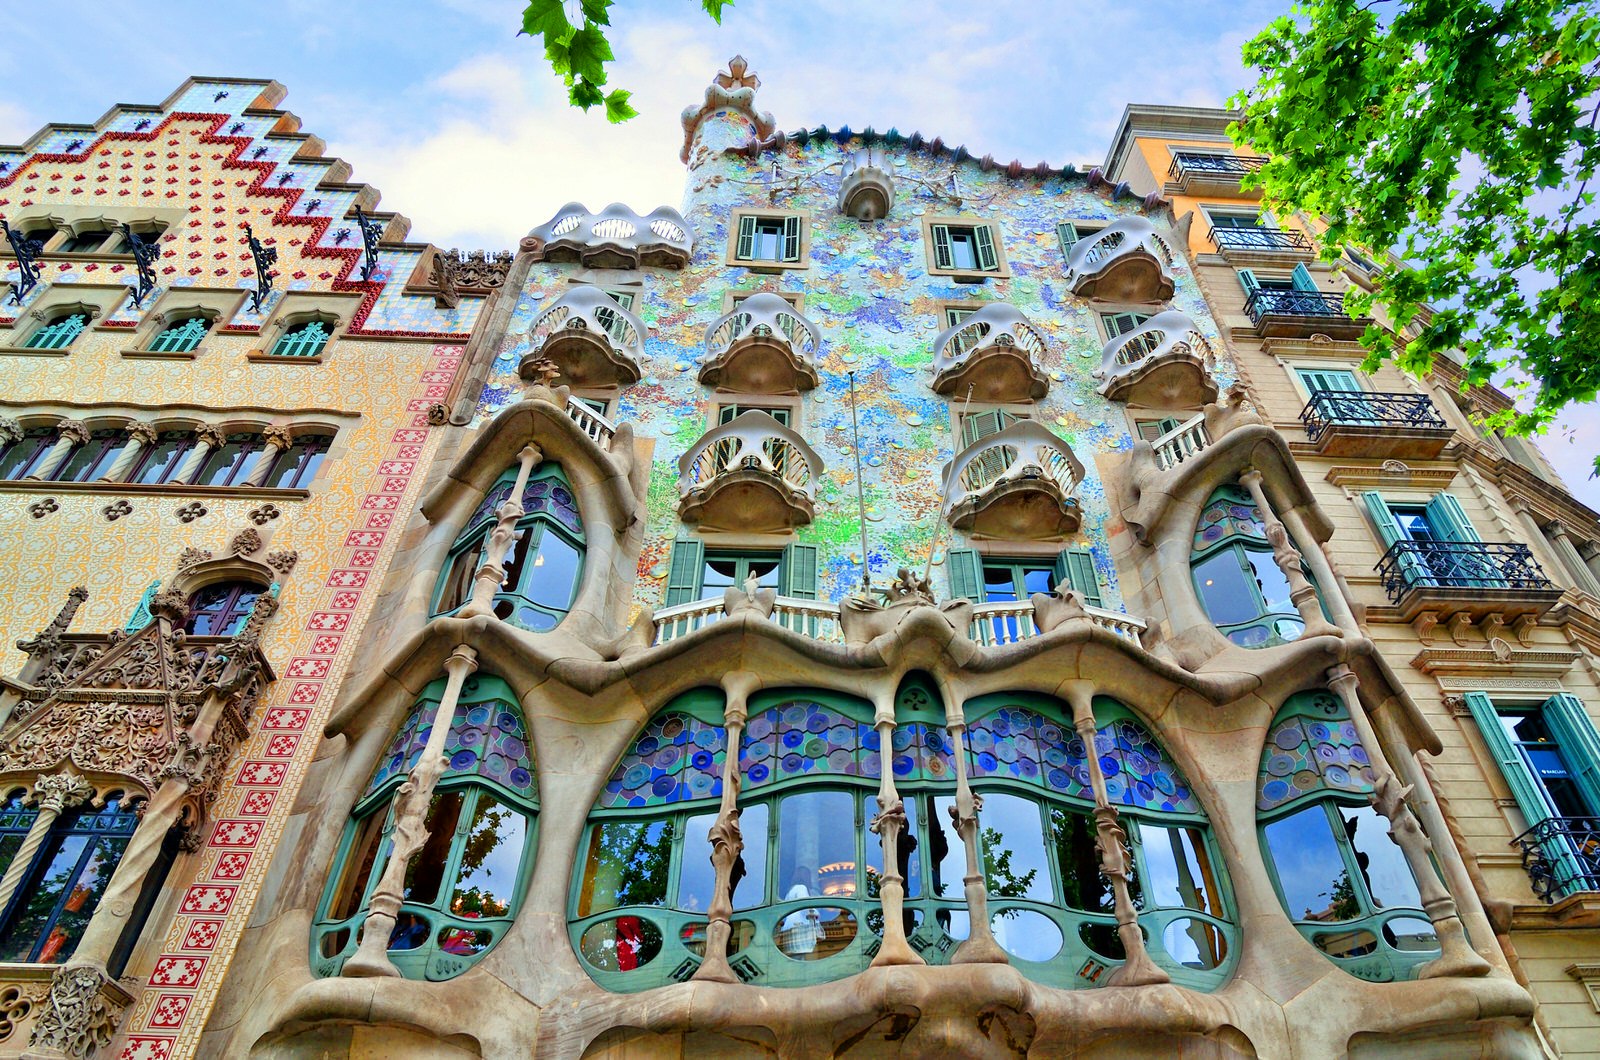 Whimsical facade of Casa Batlló in Barcelona, Spain